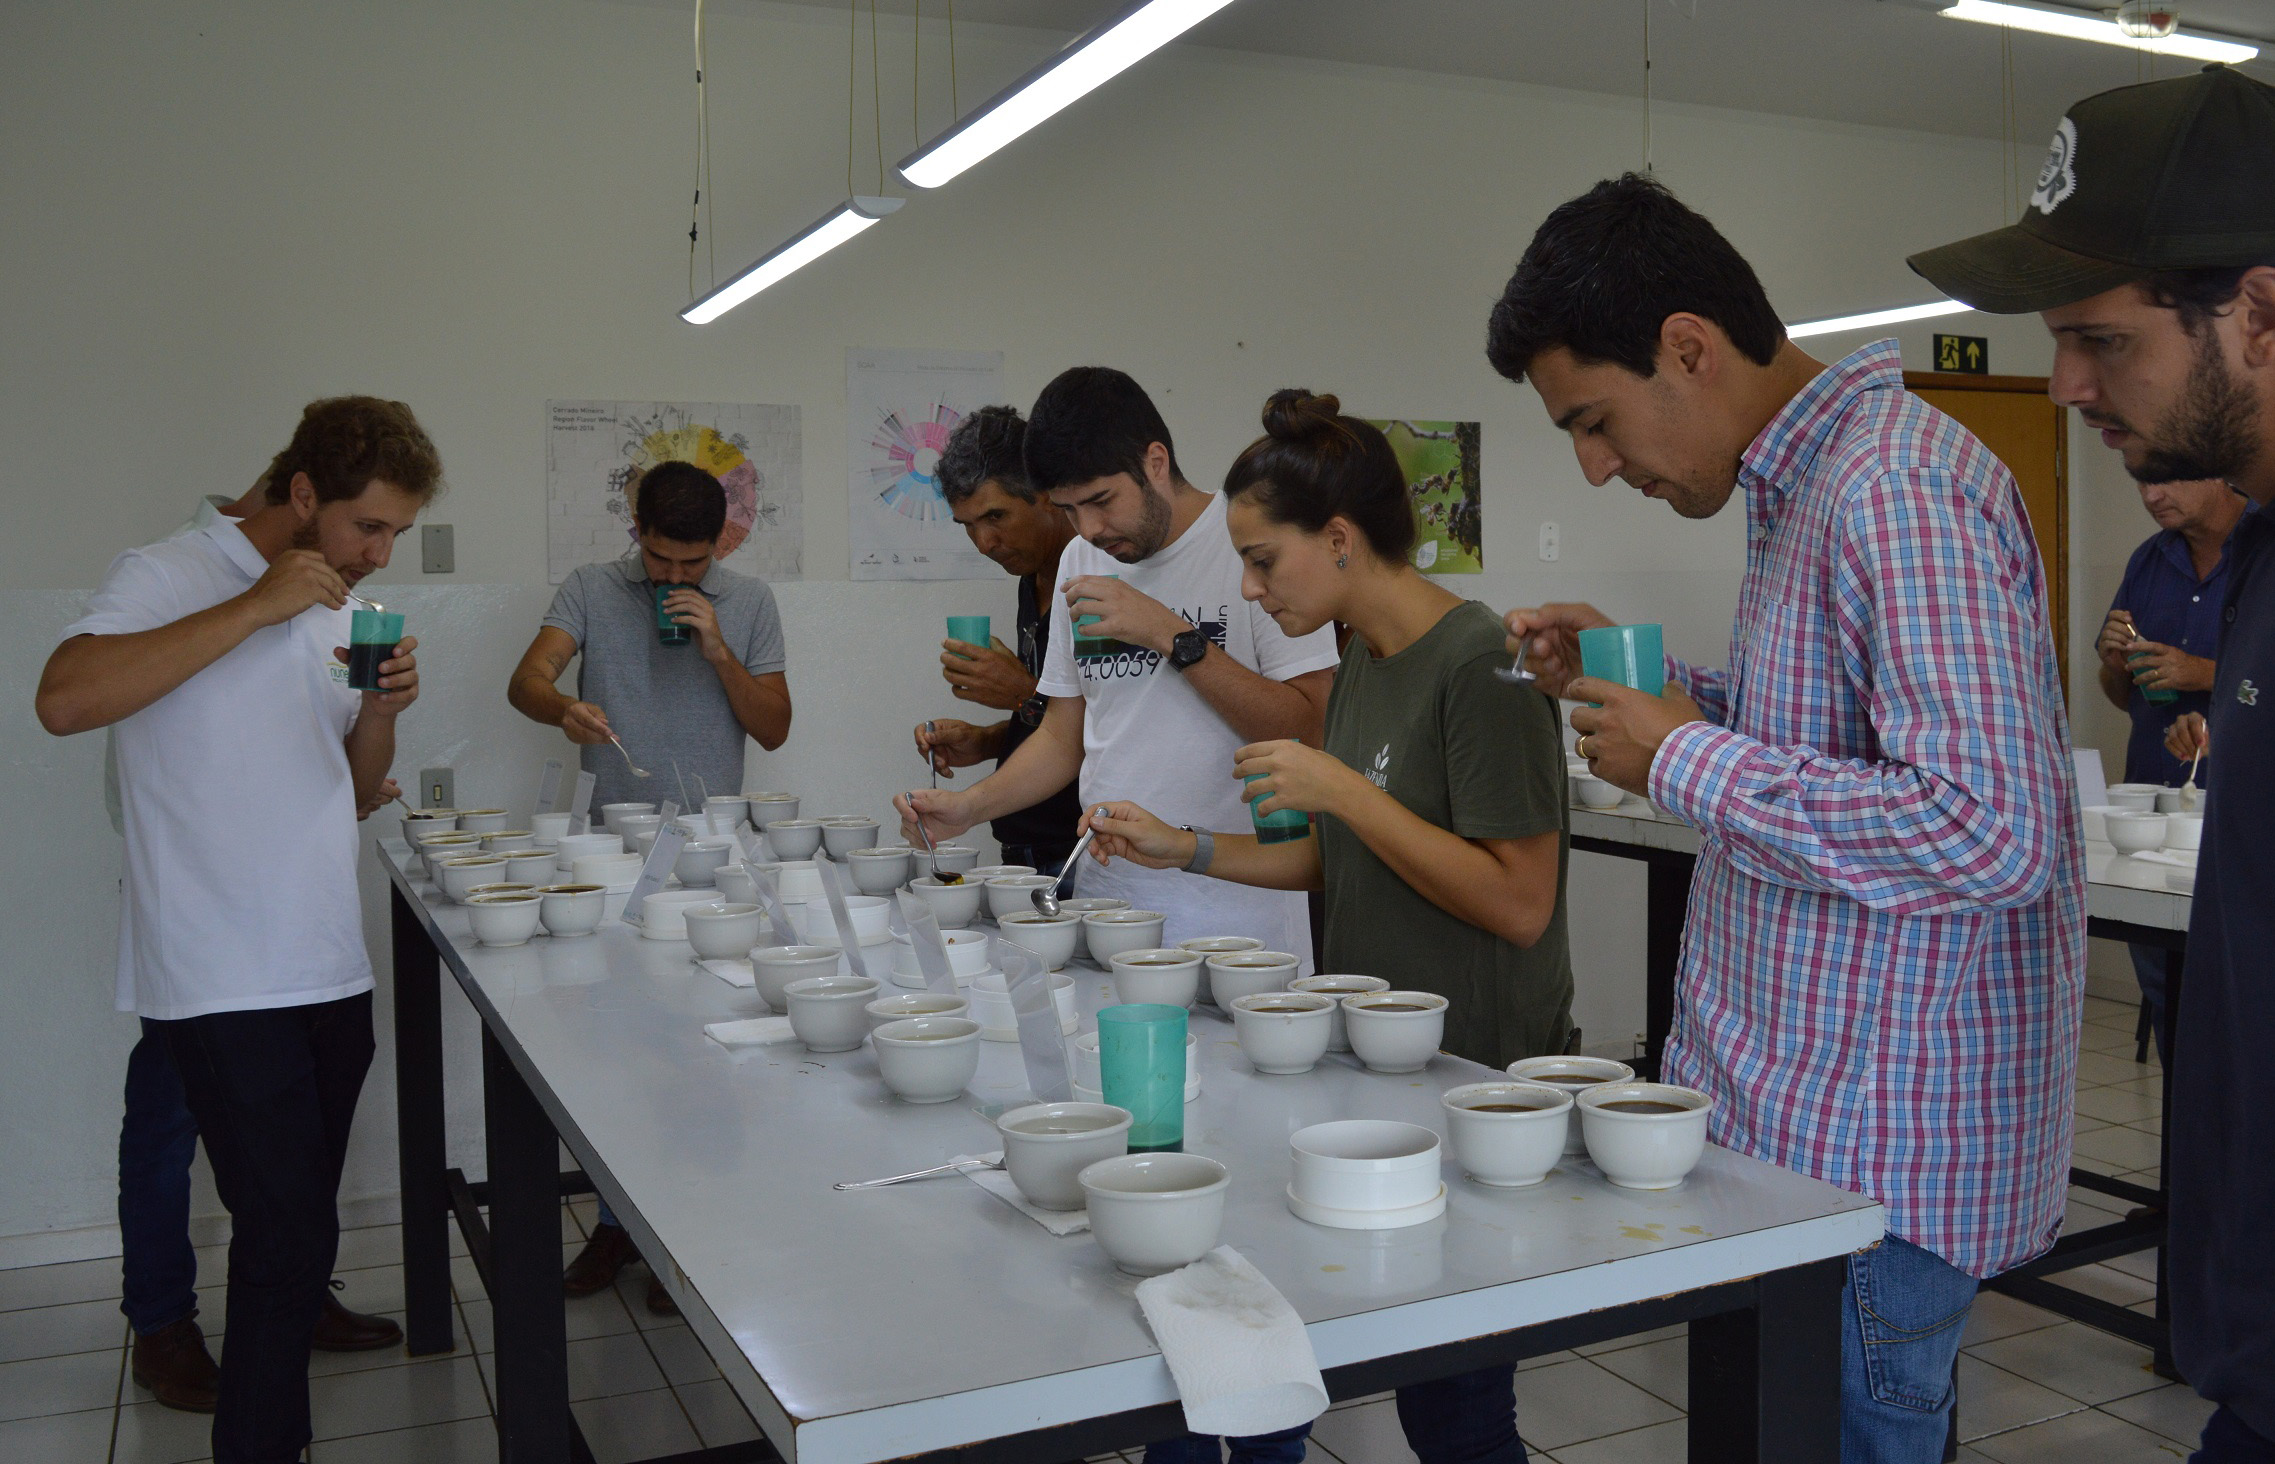 Melhores amostras foram provadas pelos produtores em um cupping - Crédito Federação de Cafeicultores do Cerrado